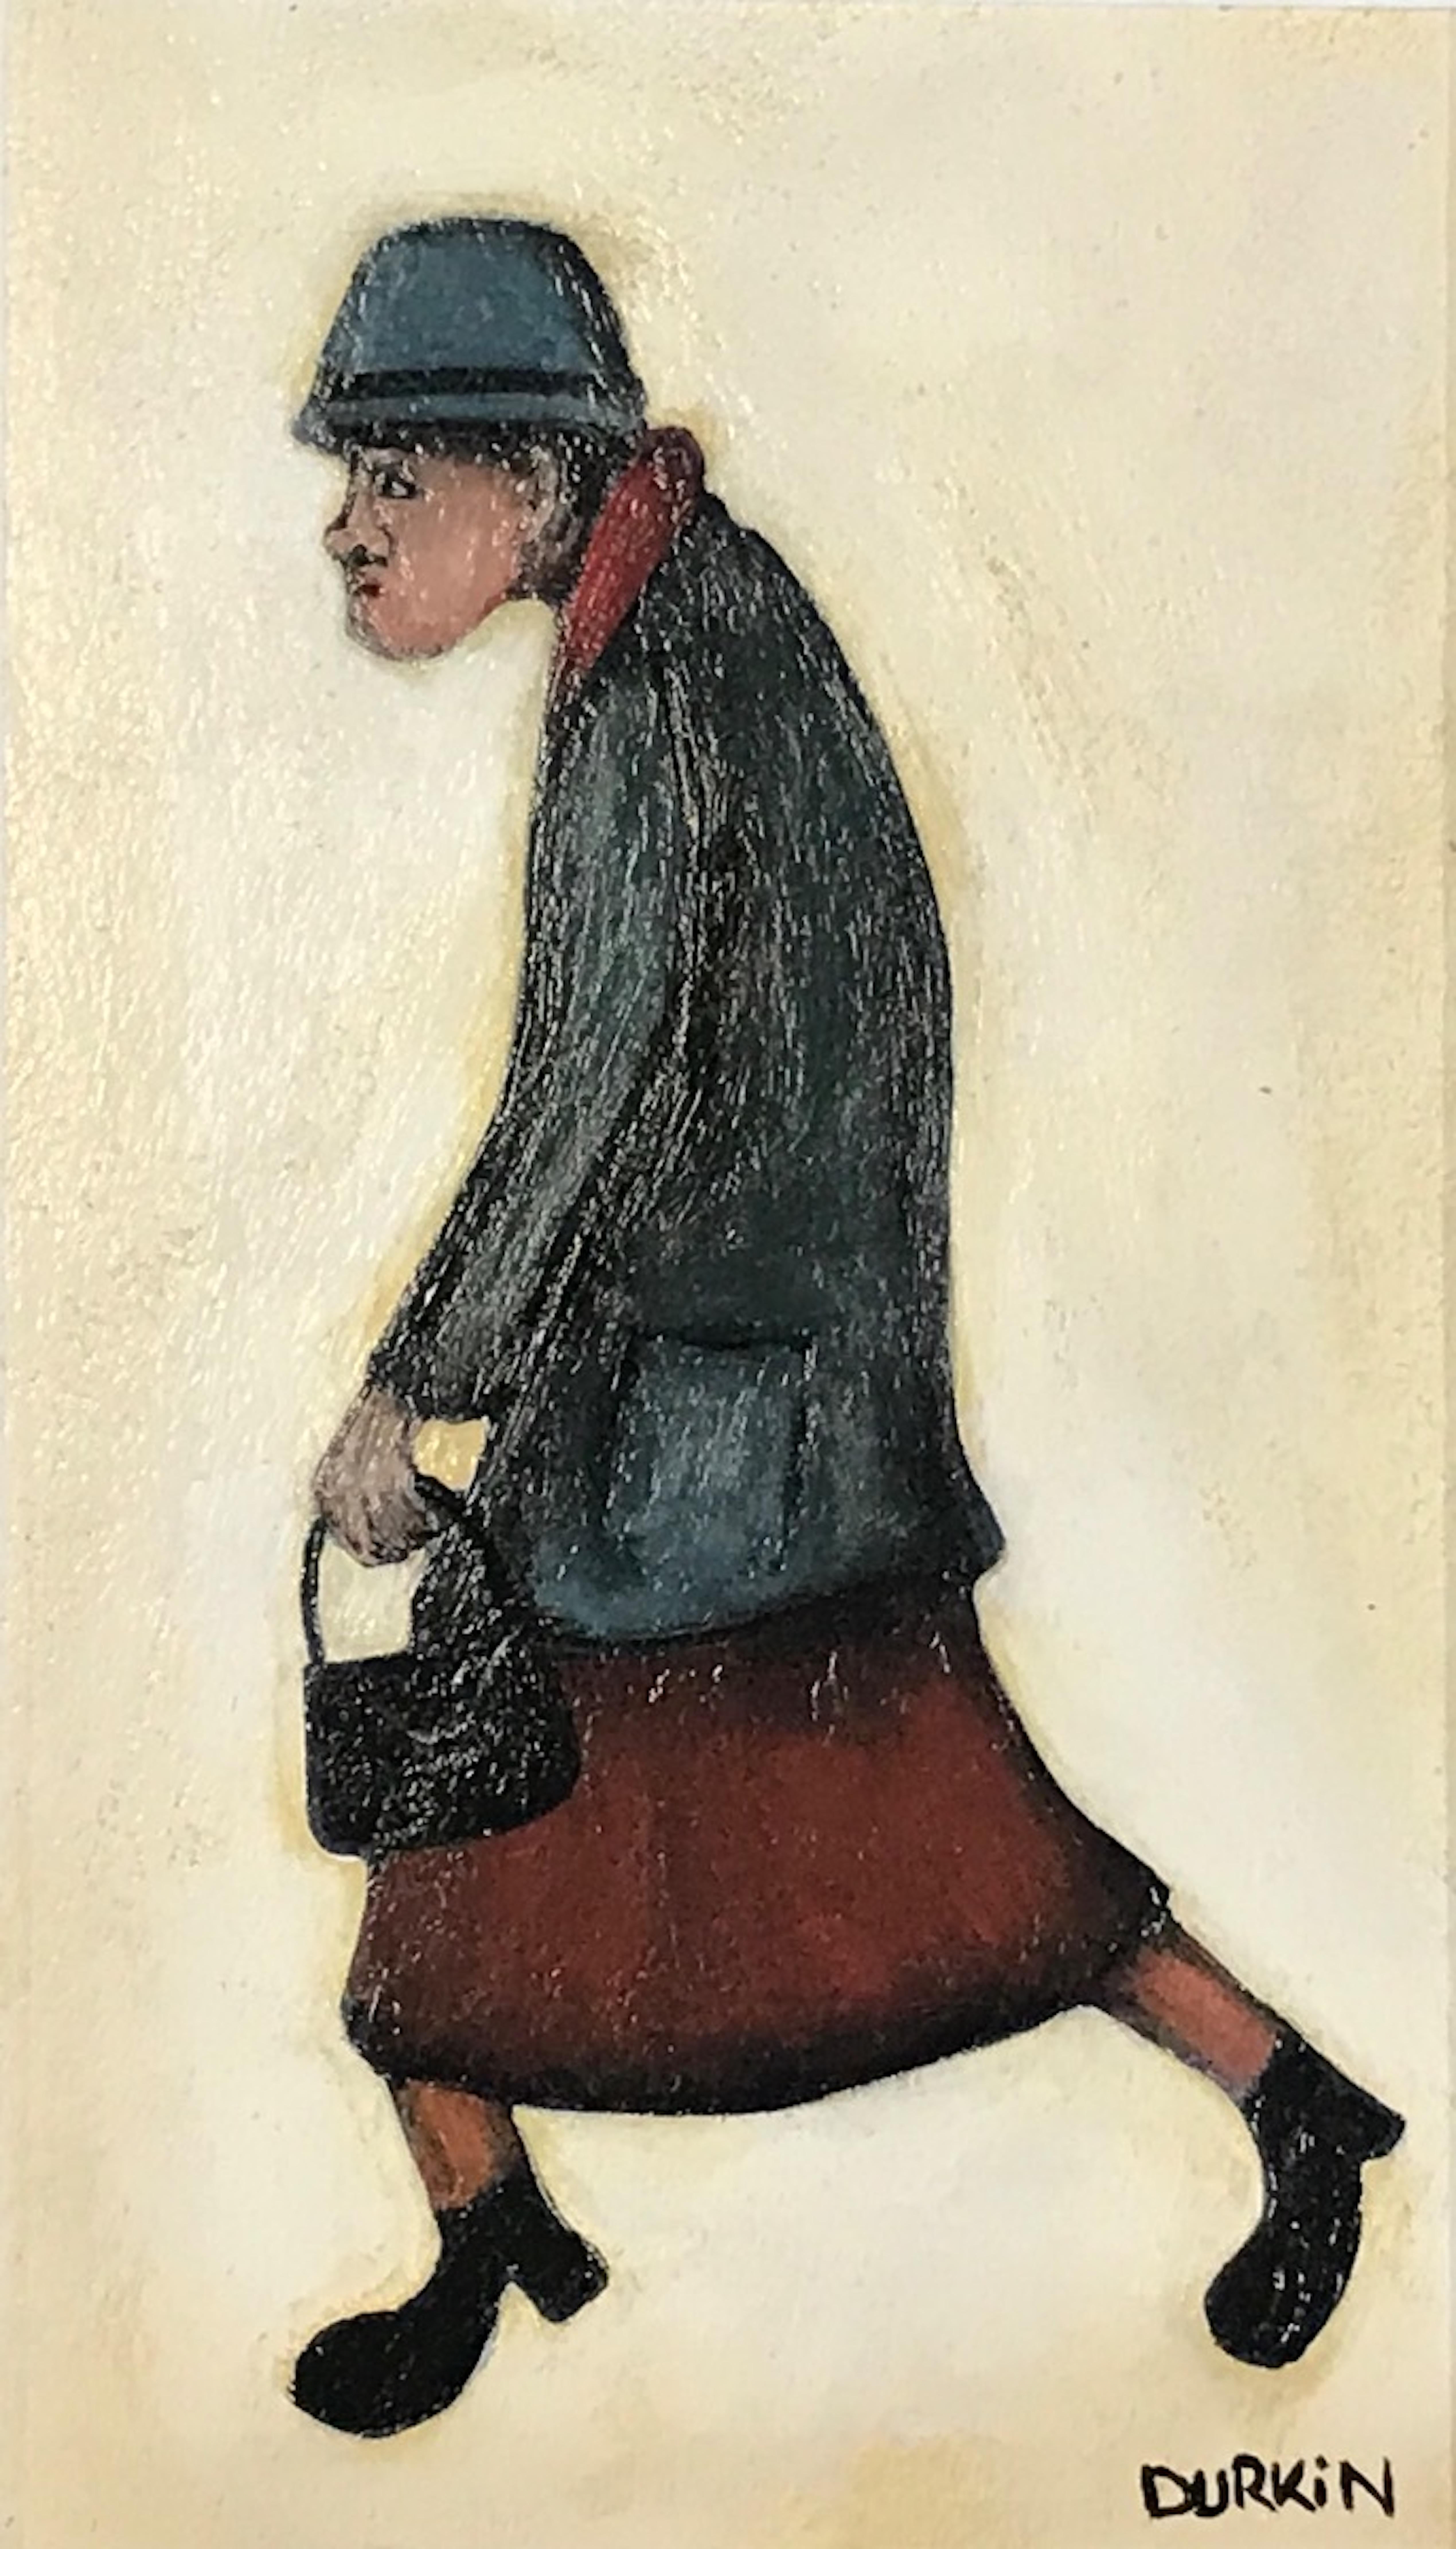 peinture originale de Lady on a walk par Sean Drukin. Sean utilise des couleurs très douces mais attire l'attention sur son foulard et sa jupe rouges.

INFORMATIONS COMPLÉMENTAIRES :
Peinture acrylique sur toile
39,5 H x 30 L x 5 P cm (15,55 x 11,81